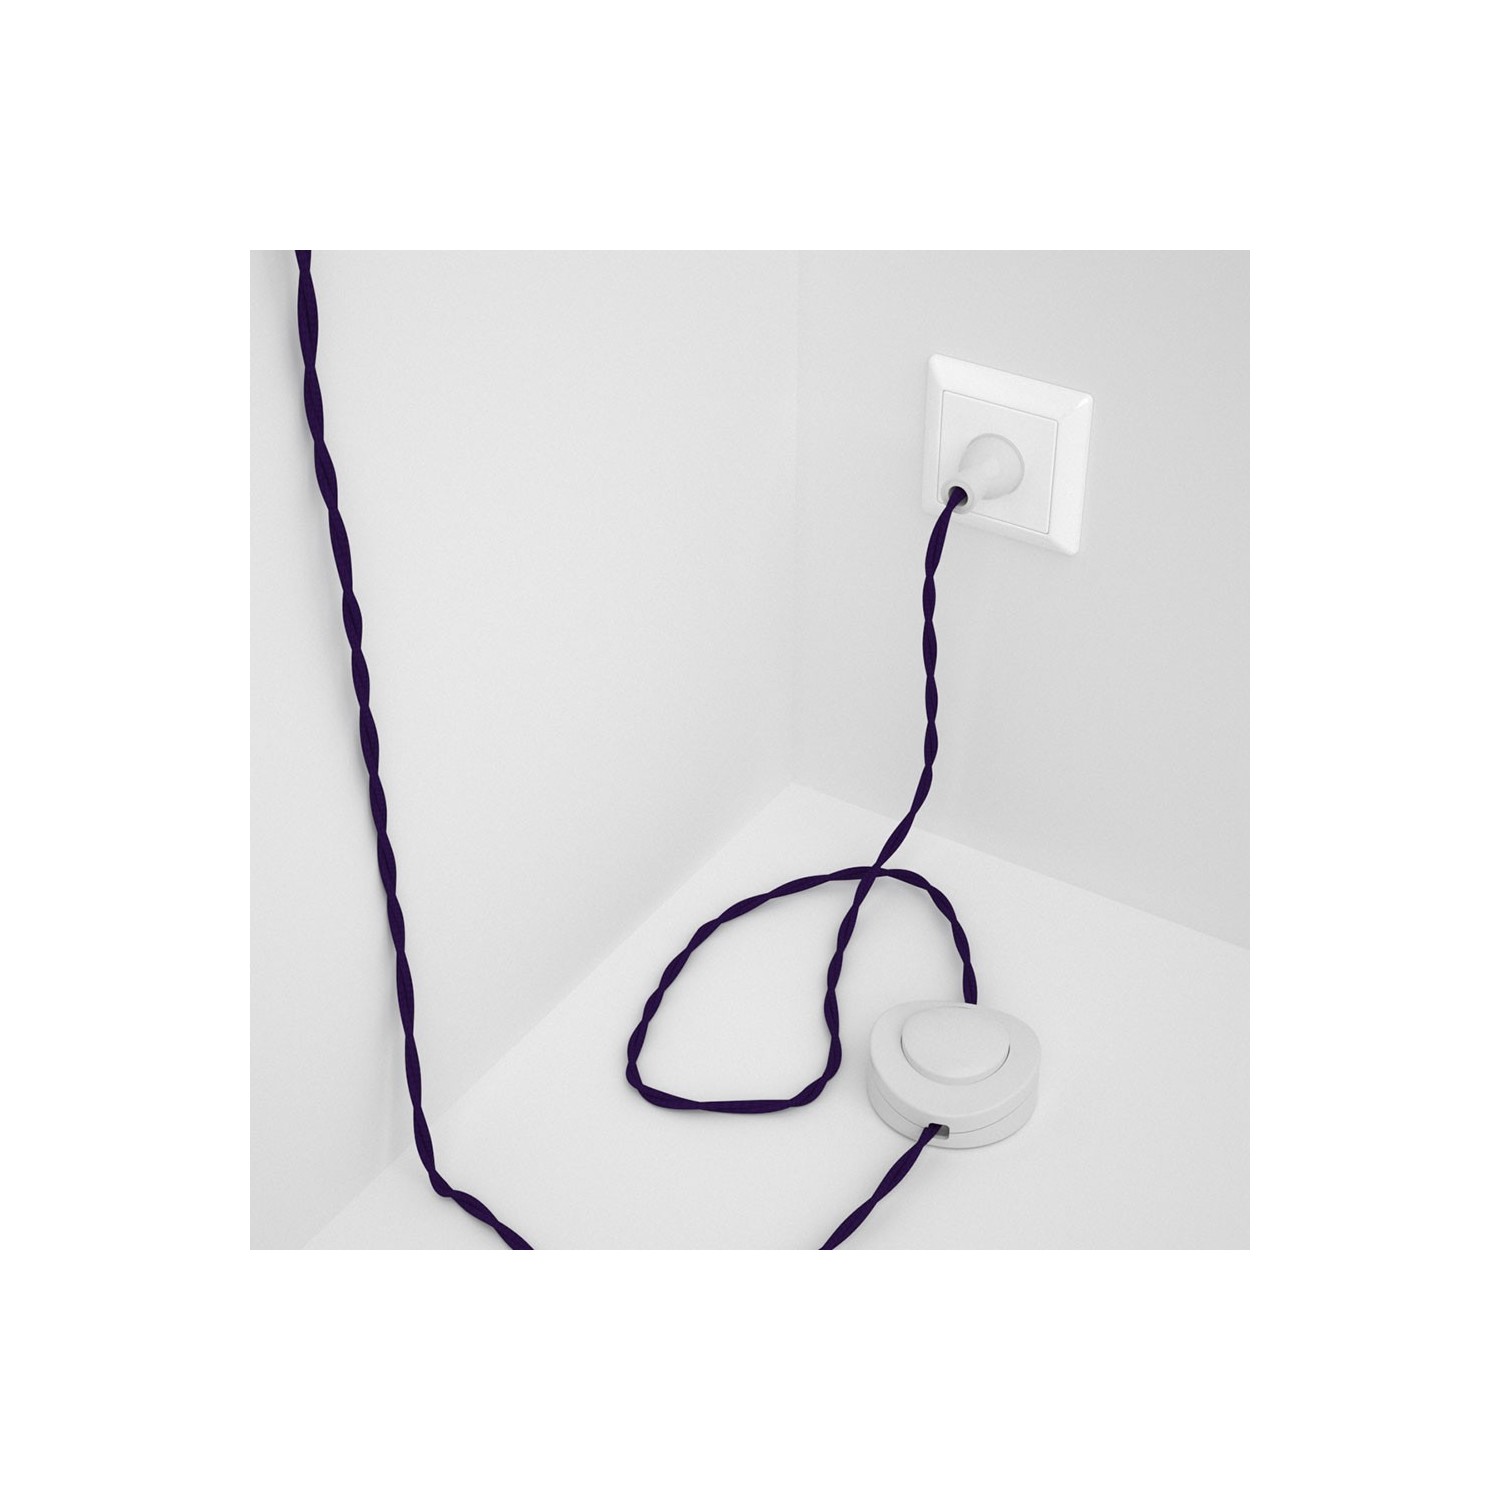 Cableado para lámpara de piso, cable TM14 Rayón Púrpura 3 m. Elige tu el color de la clavija y del interruptor!